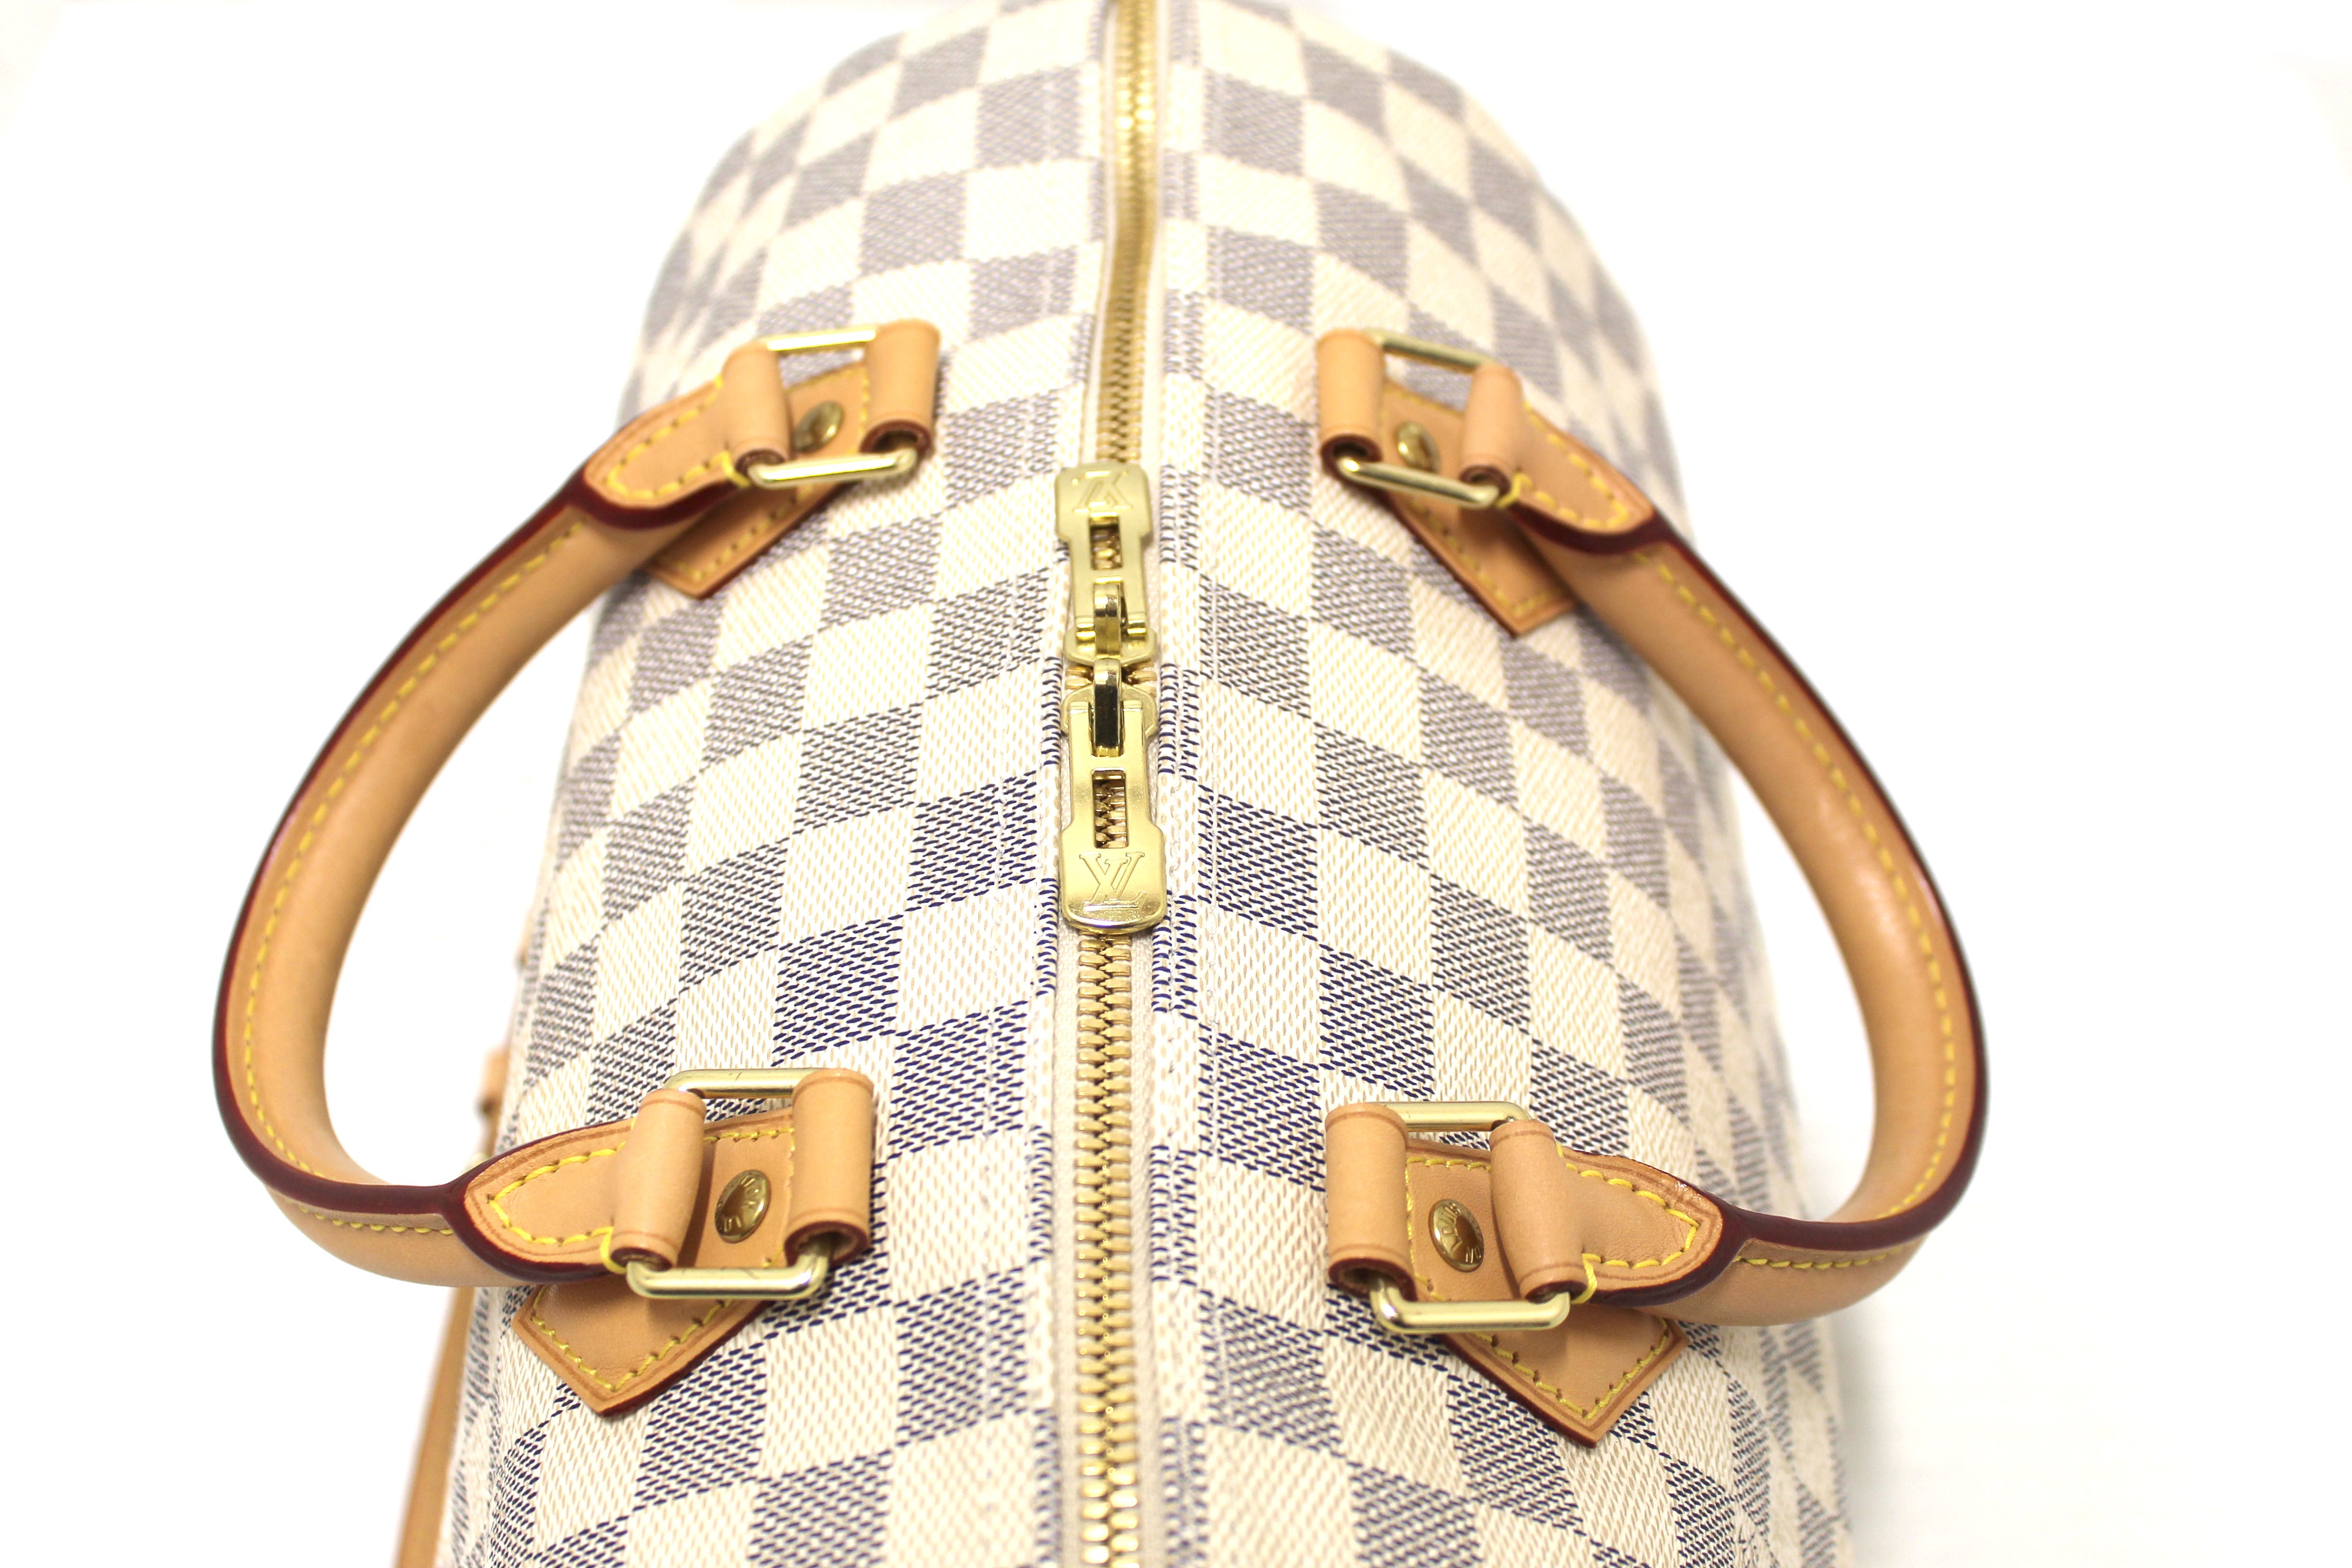 Authentic Louis Vuitton Damier Azur Speedy 30 Bandouliere Bag